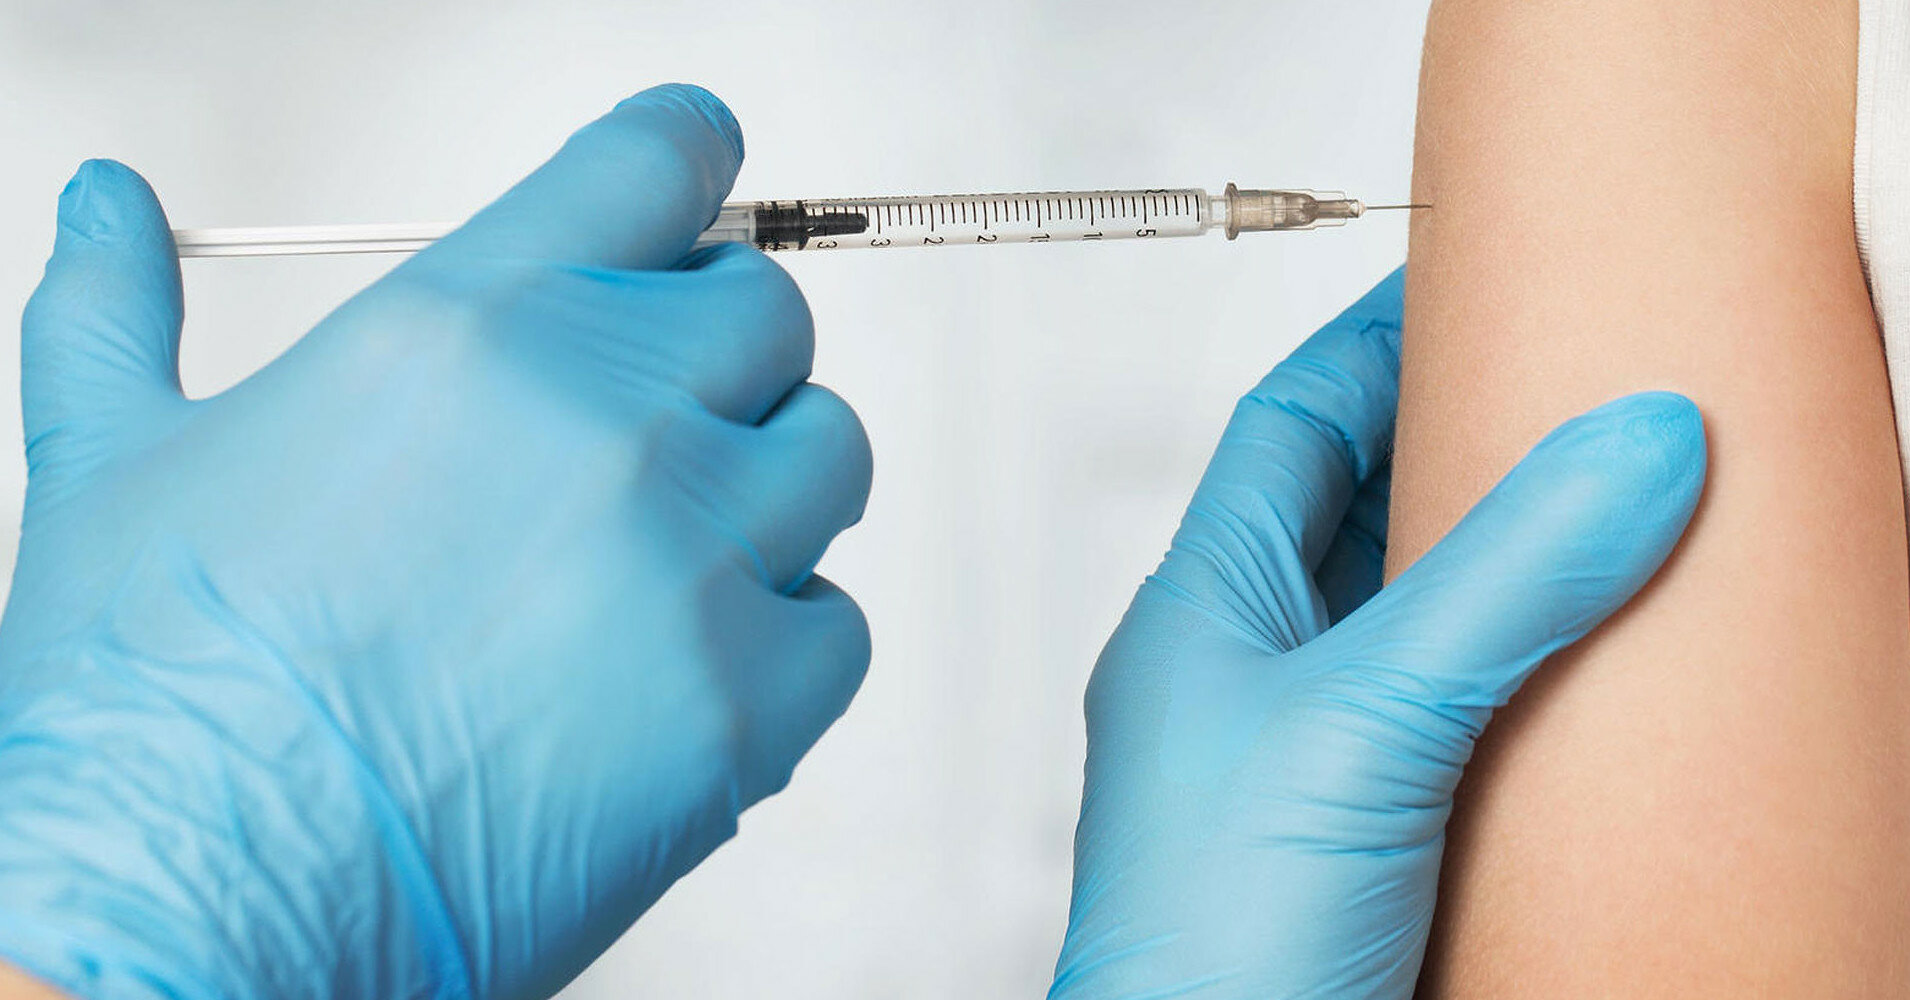 В Польше участились случаи неявки на вторую дозу прививки от COVID-19